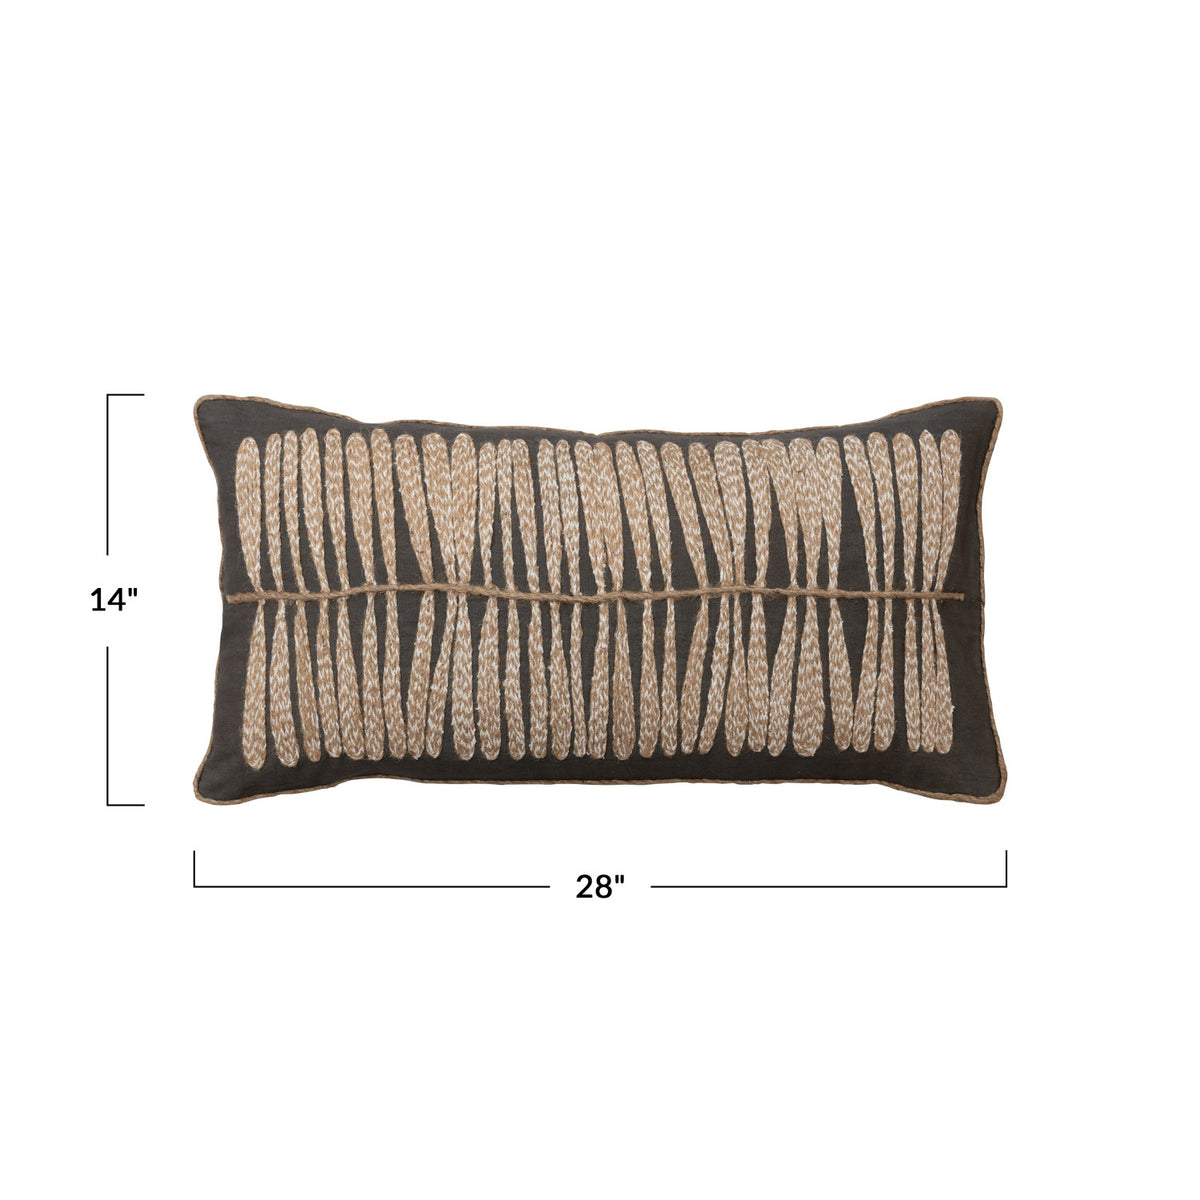 28"X14" Cotton Lumbar Pillow w/Jute